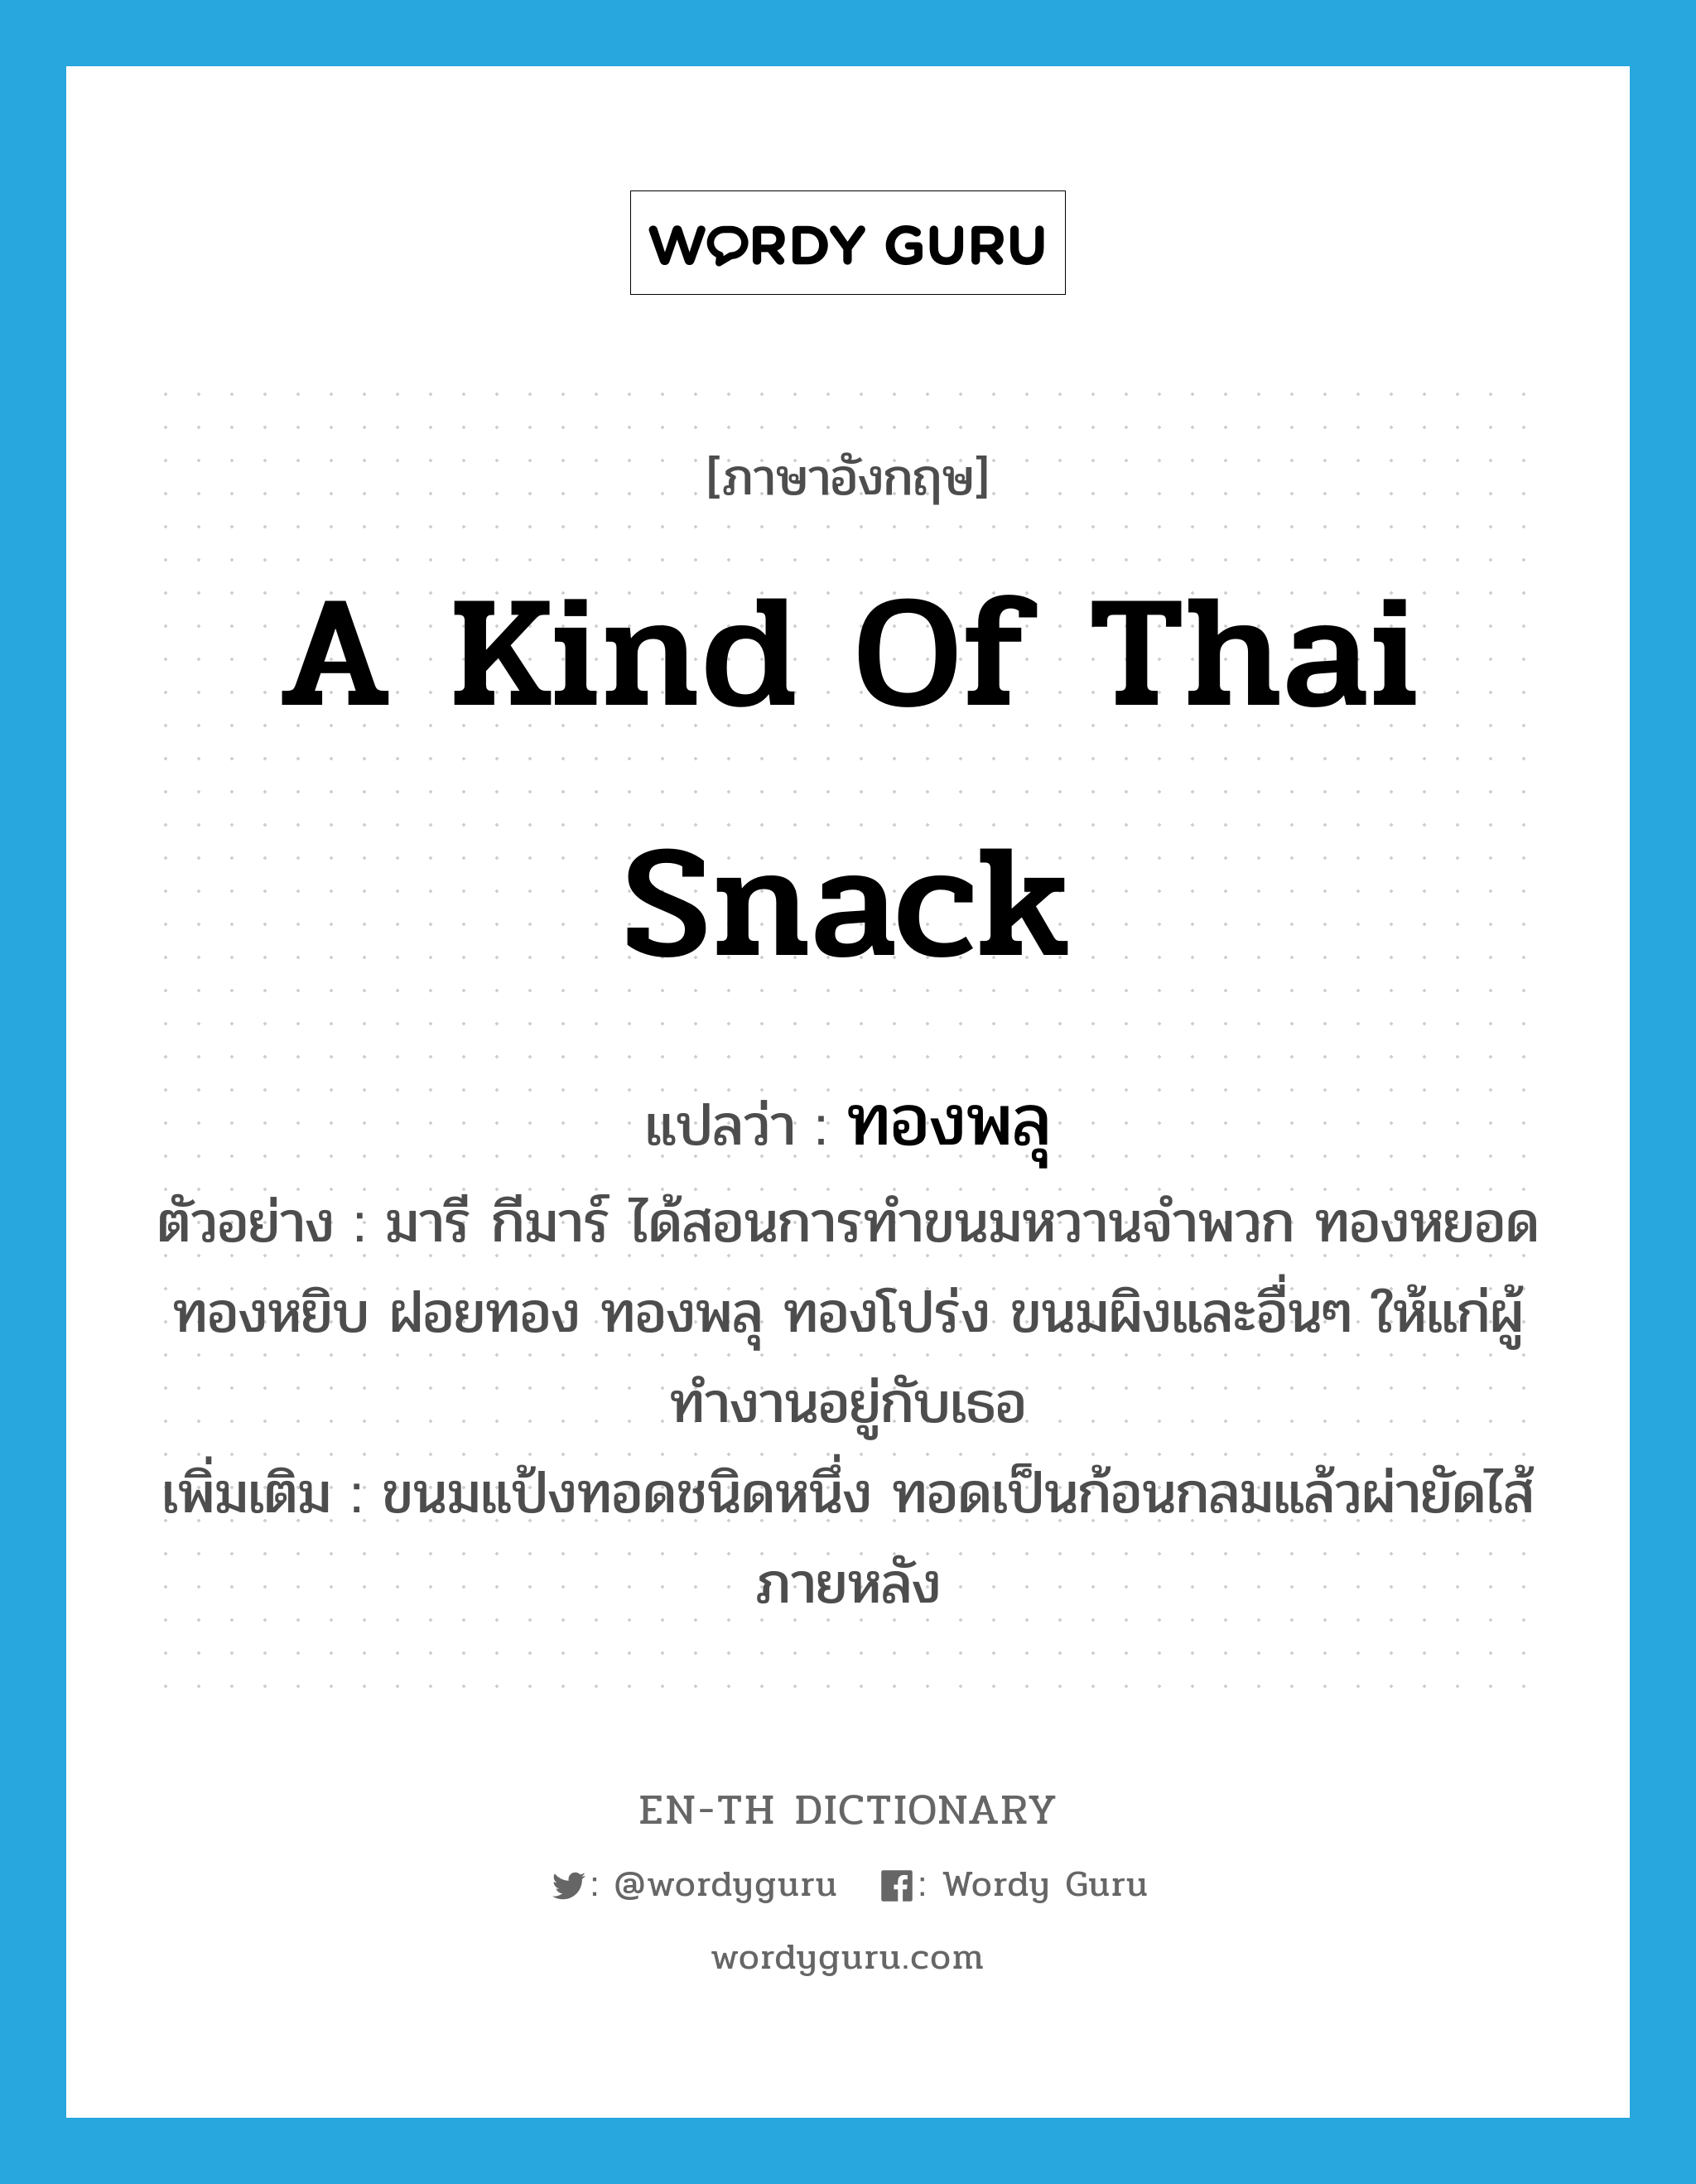 a kind of Thai snack แปลว่า? คำศัพท์ในกลุ่มประเภท N, คำศัพท์ภาษาอังกฤษ a kind of Thai snack แปลว่า ทองพลุ ประเภท N ตัวอย่าง มารี กีมาร์ ได้สอนการทำขนมหวานจำพวก ทองหยอด ทองหยิบ ฝอยทอง ทองพลุ ทองโปร่ง ขนมผิงและอื่นๆ ให้แก่ผู้ทำงานอยู่กับเธอ เพิ่มเติม ขนมแป้งทอดชนิดหนึ่ง ทอดเป็นก้อนกลมแล้วผ่ายัดไส้ภายหลัง หมวด N